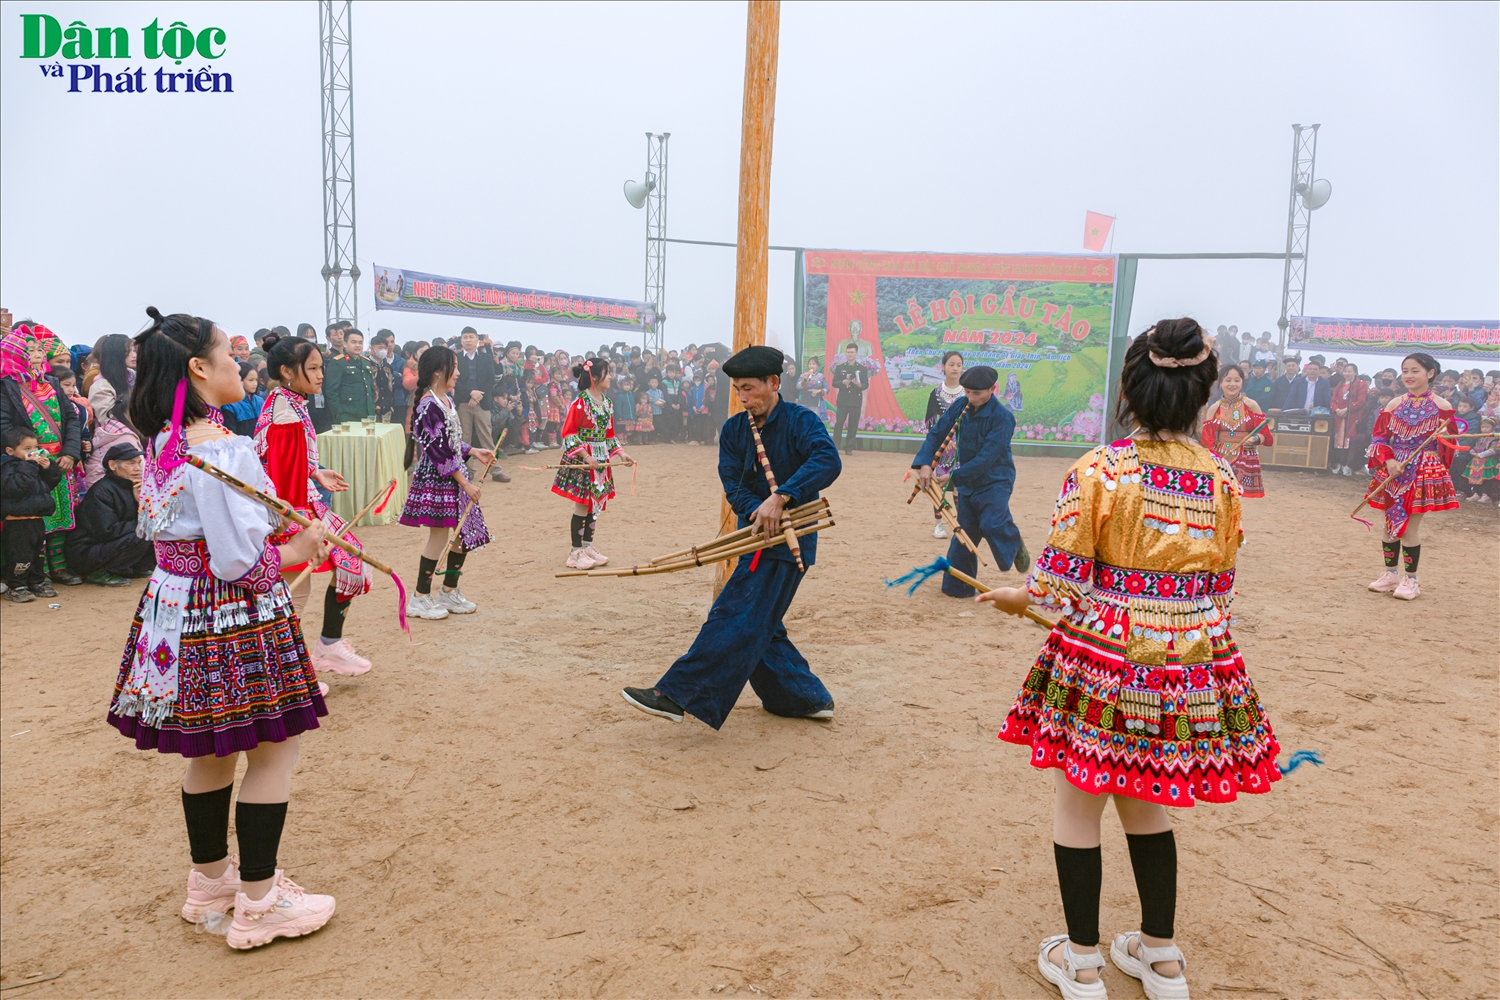 Sau nghi thức dựng cây nêu, đến phần hội, các chàng trai cô gái, người già trẻ nhỏ bản Mông cùng nắm tay nhau múa vòng theo nhịp khèn. Trong văn hóa của người Mông, tiếng khèn thể hiện tâm linh, tín ngưỡng truyền thống, là vật linh thiêng trong các nghi lễ, lễ hội của người Mông.